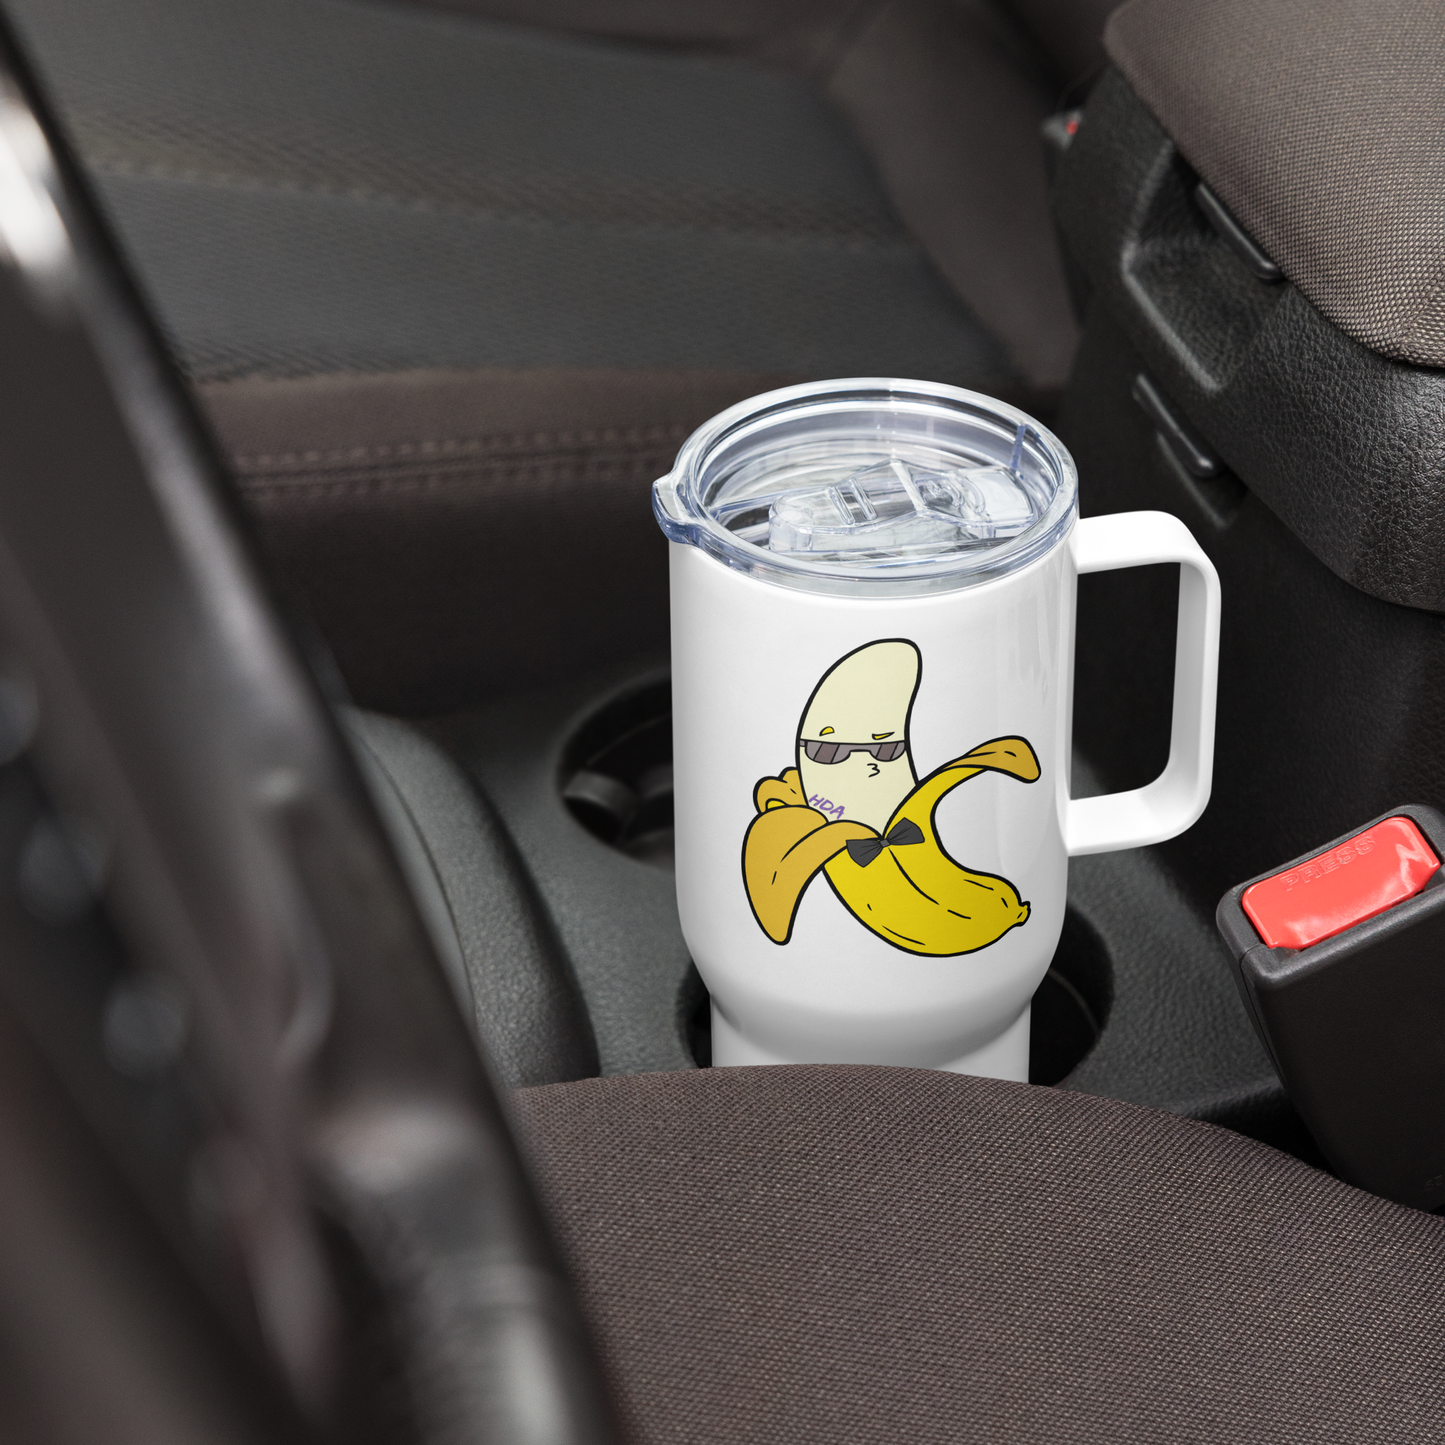 Banana Travel mug with a handle